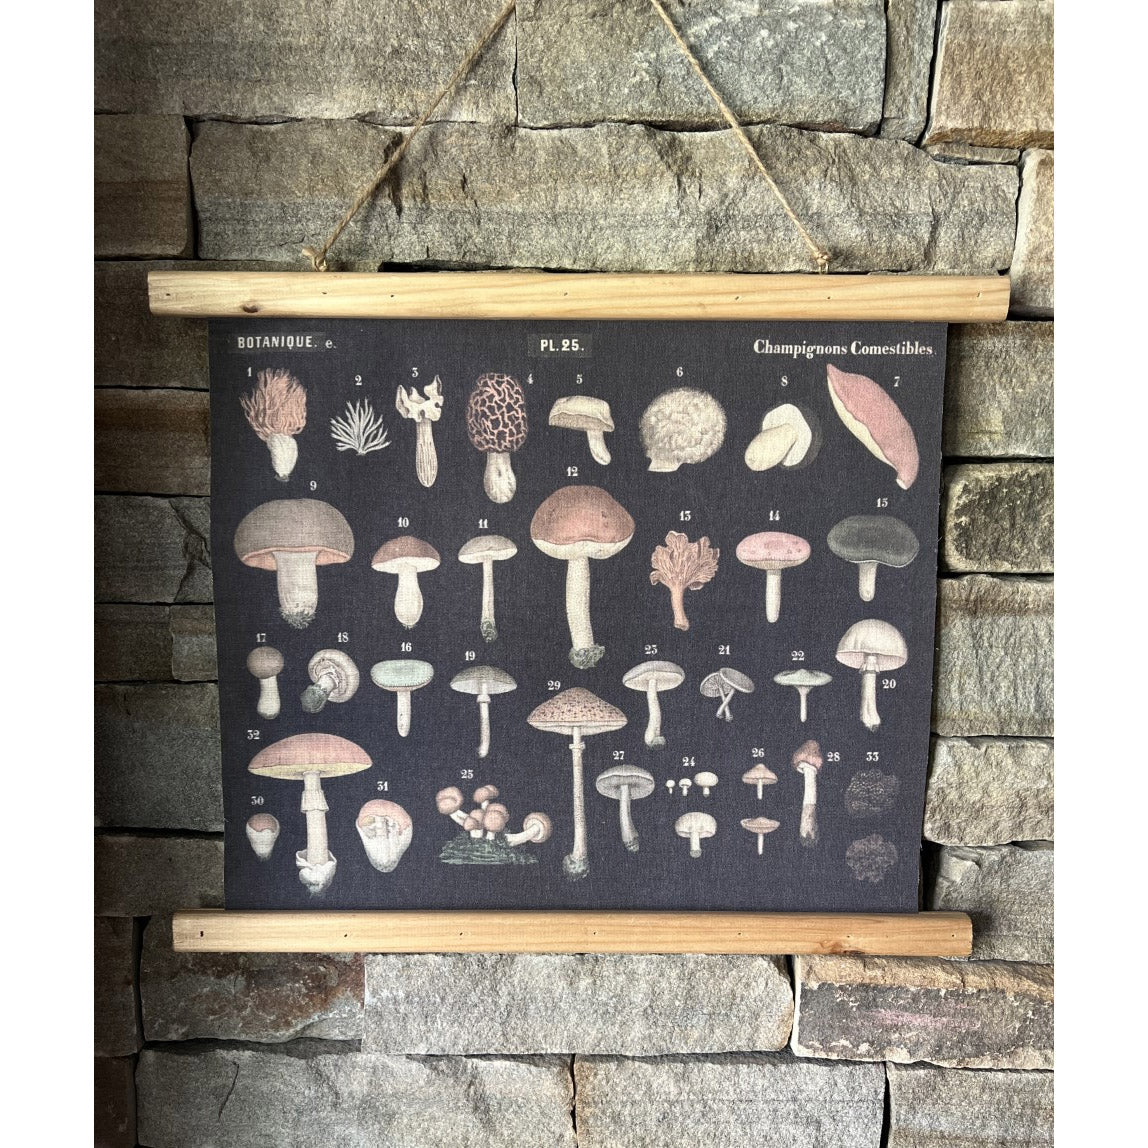 Mushroom Scroll Wall Decor